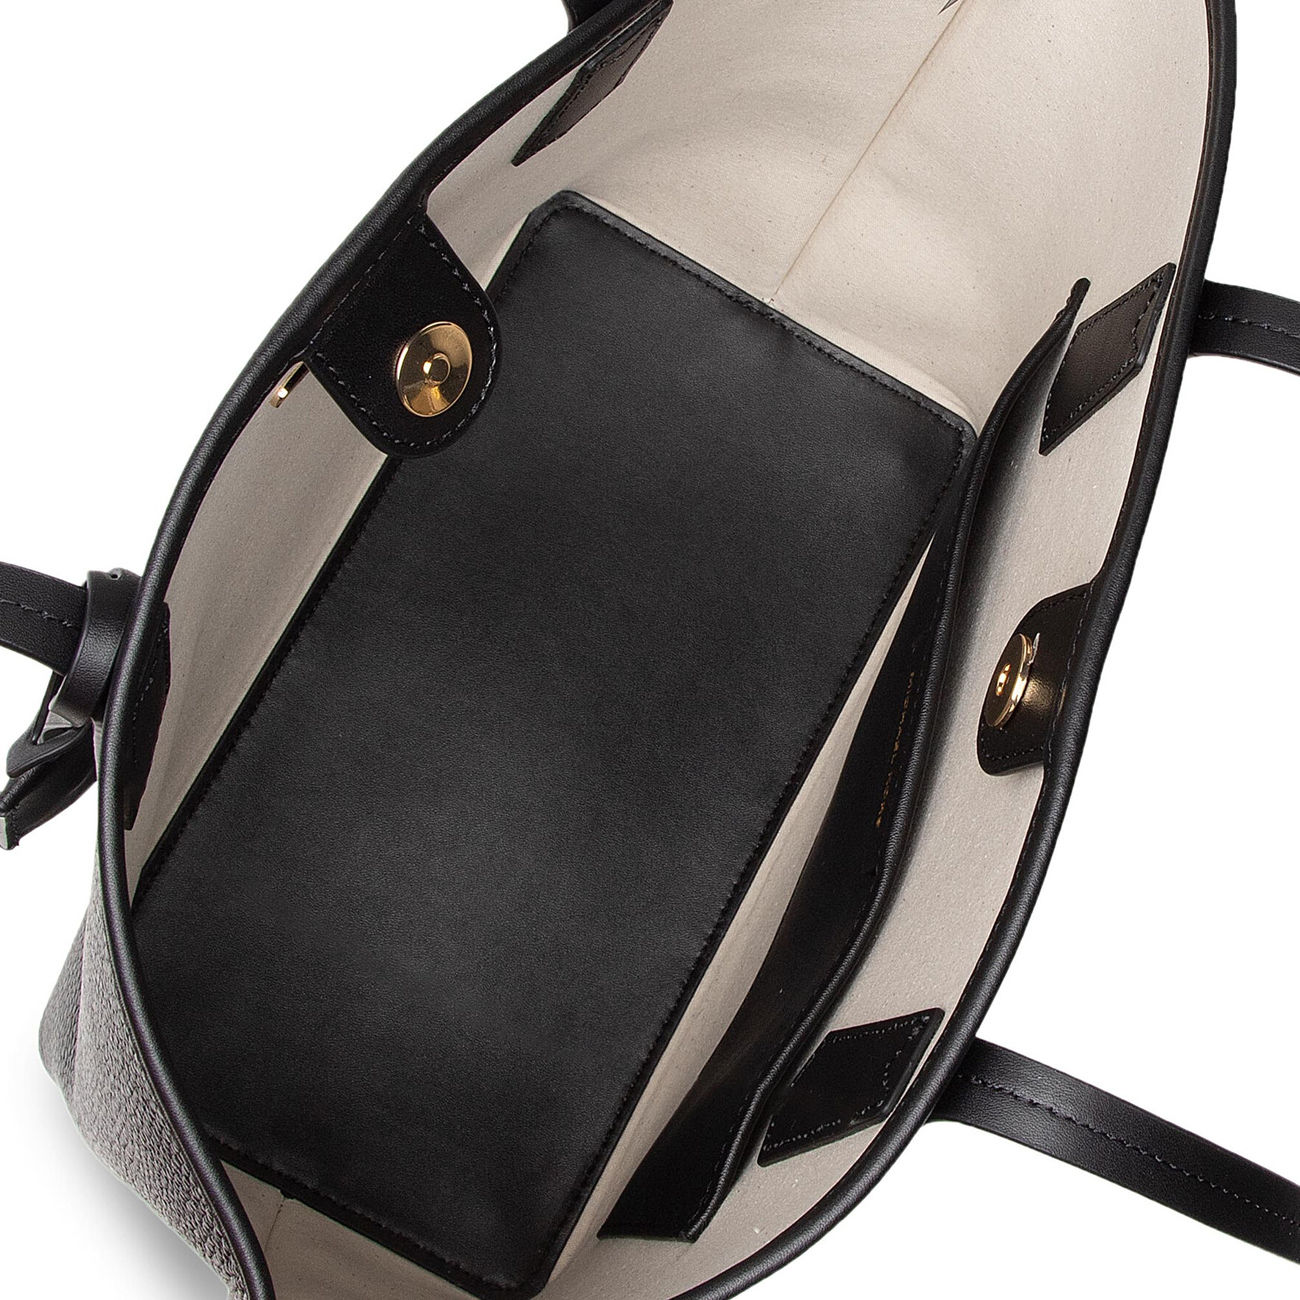 Michael Kors Gray Leather Tote Bag